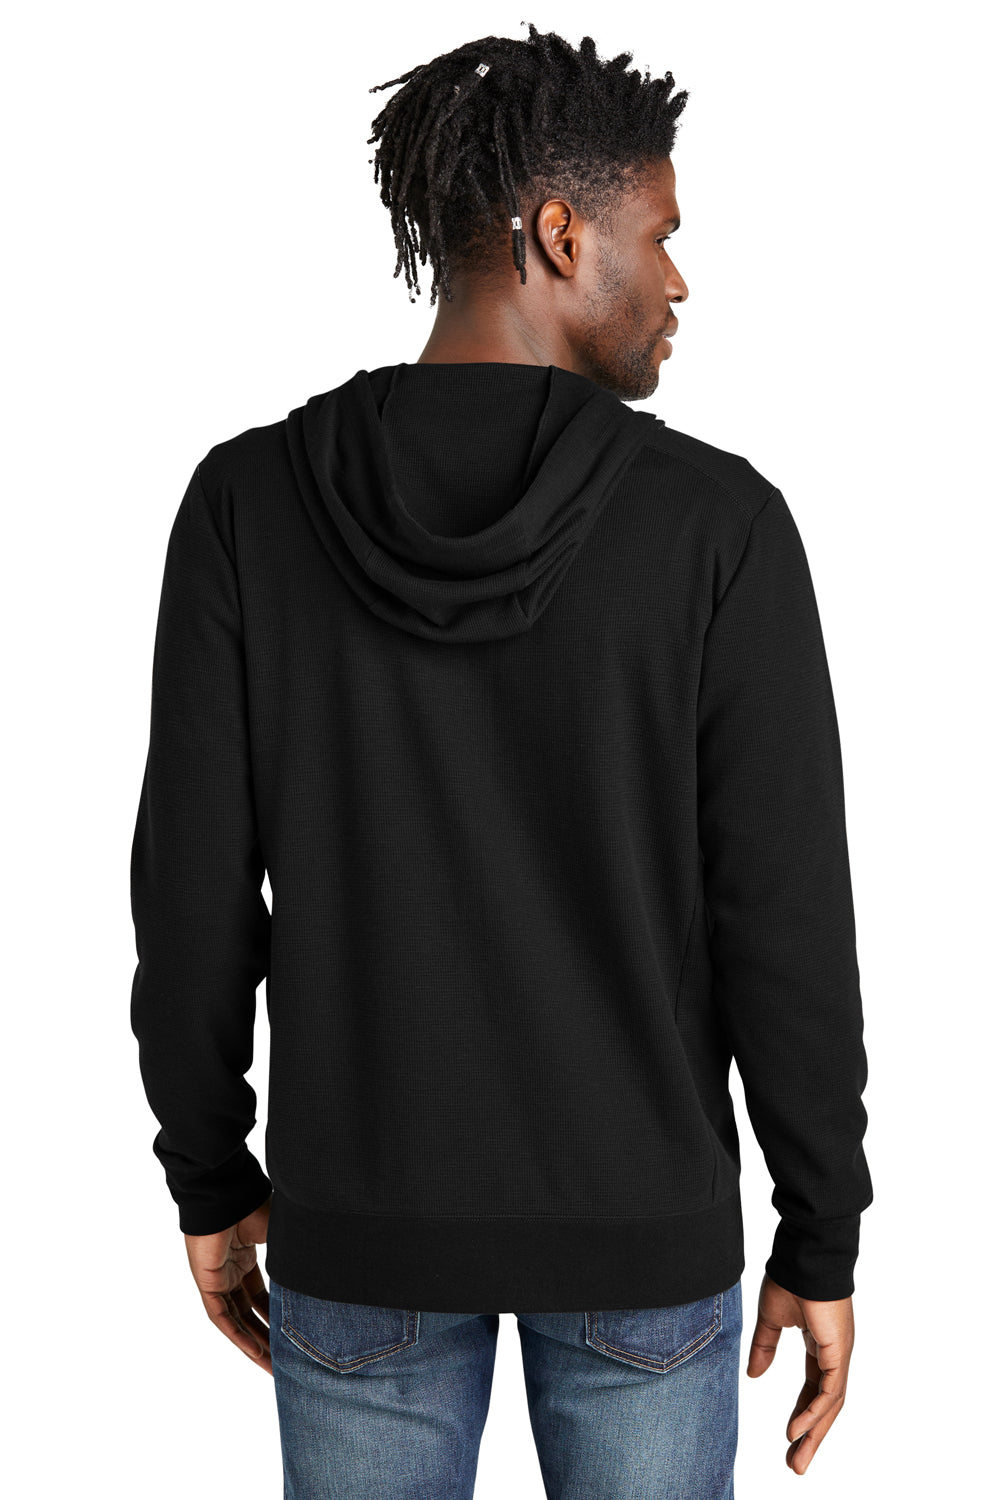 New Era NEA141 Thermal Full Zip Hooded Sweatshirt Hoodie Black Back